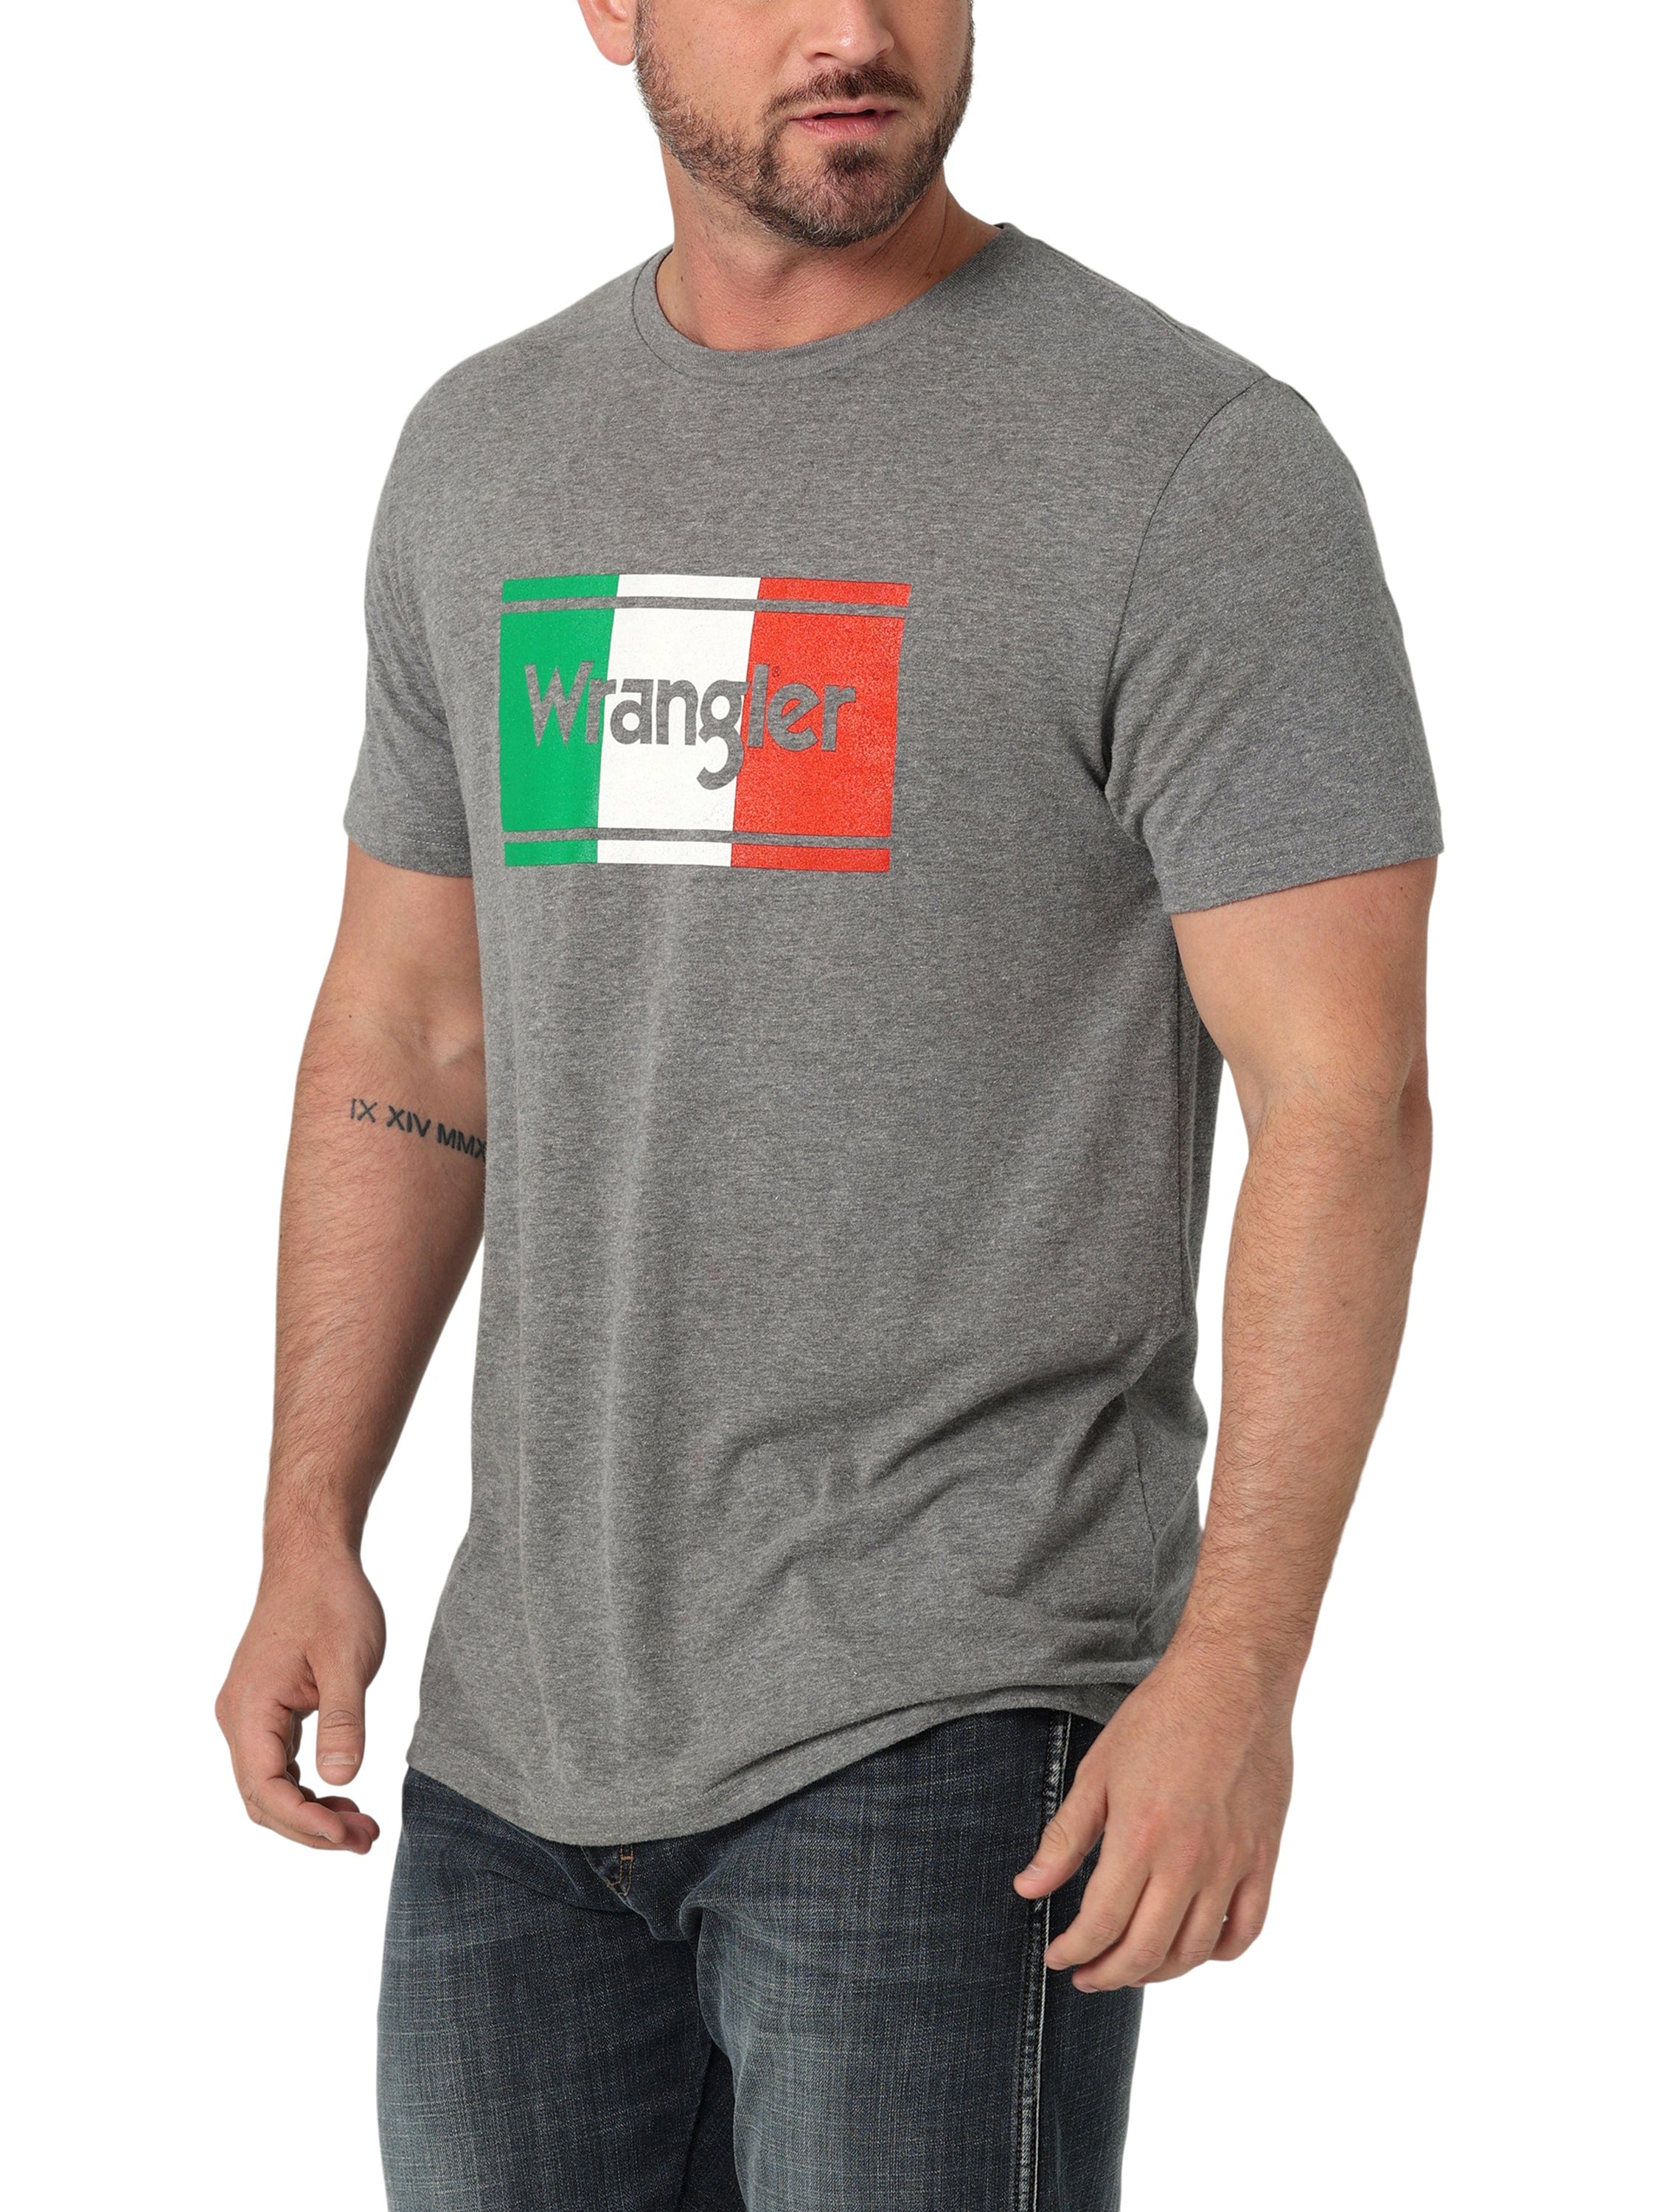 Wrangler Men's Graphite Heather Mexican Flag Short Sleeve T-Shirt